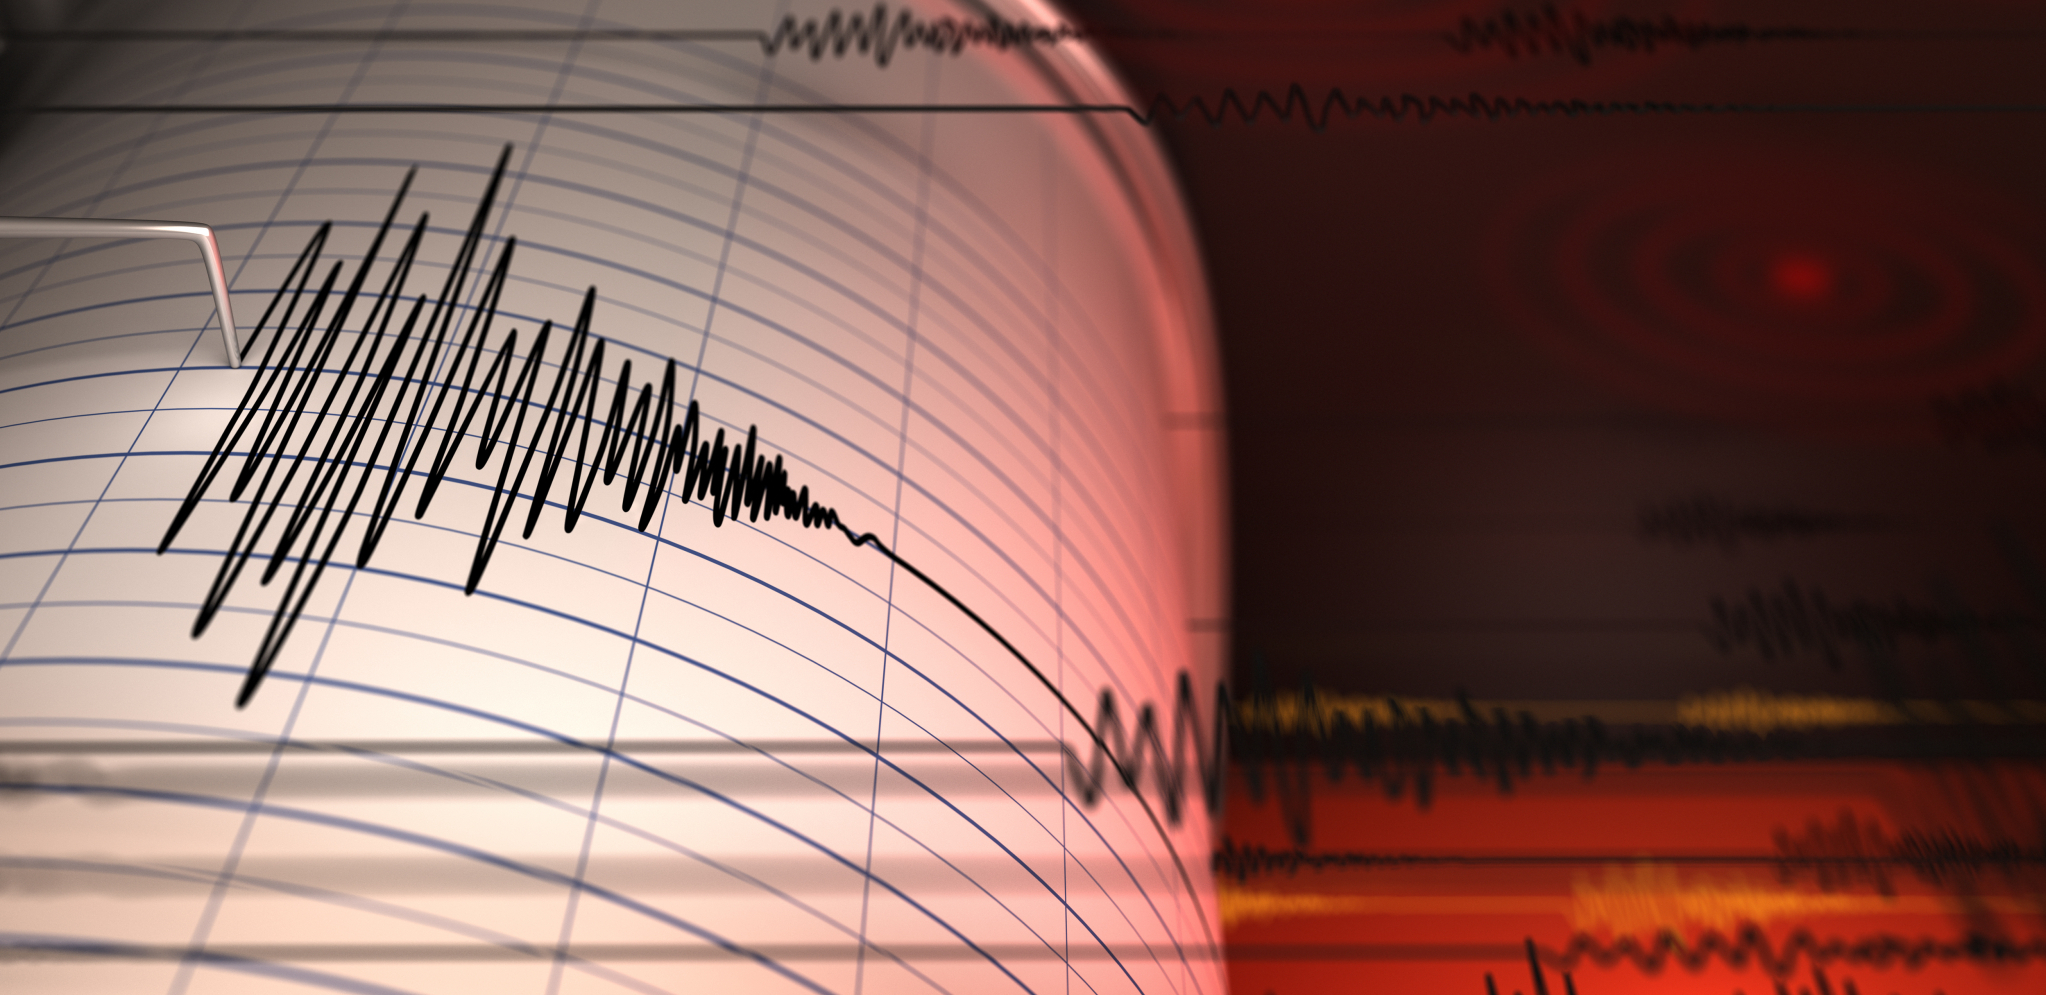 JAČINA 7.5 RIHTERA! Razoran zemljotres na francuskoj teritoriji napravio cunami